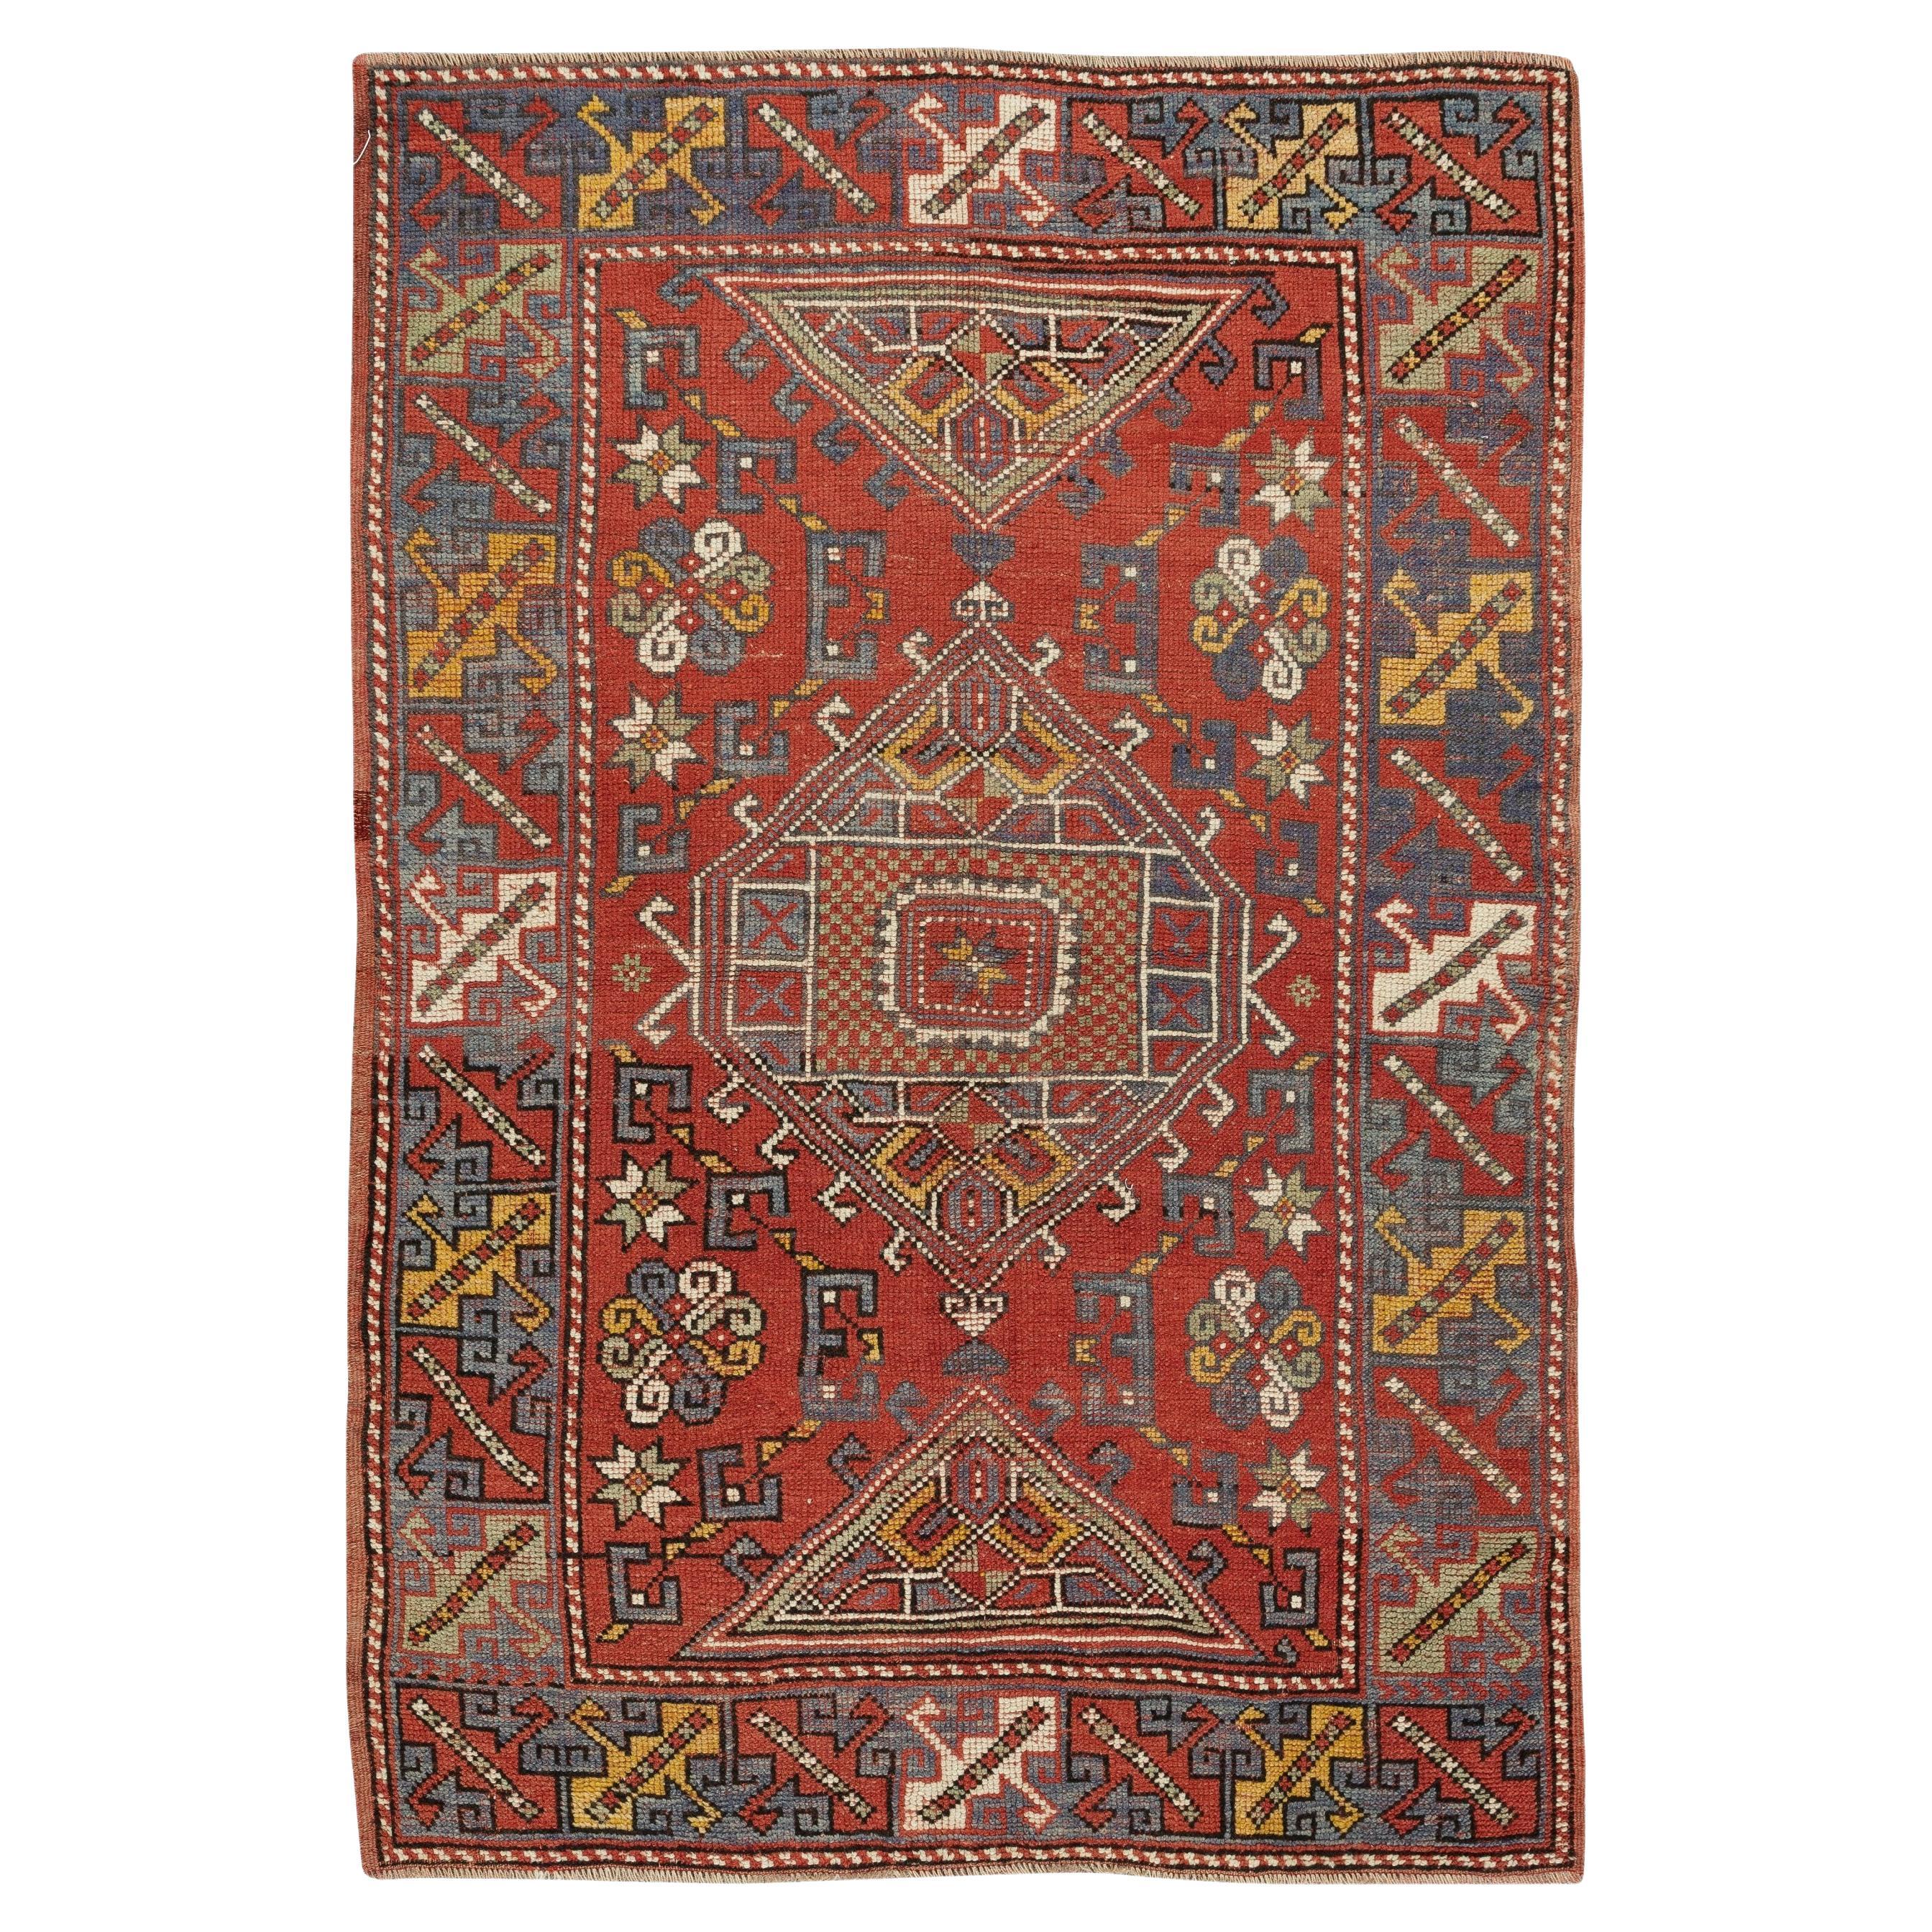 Handgefertigter roter türkischer Teppich in geometrischem Design, 3.9x5.7 Fuß